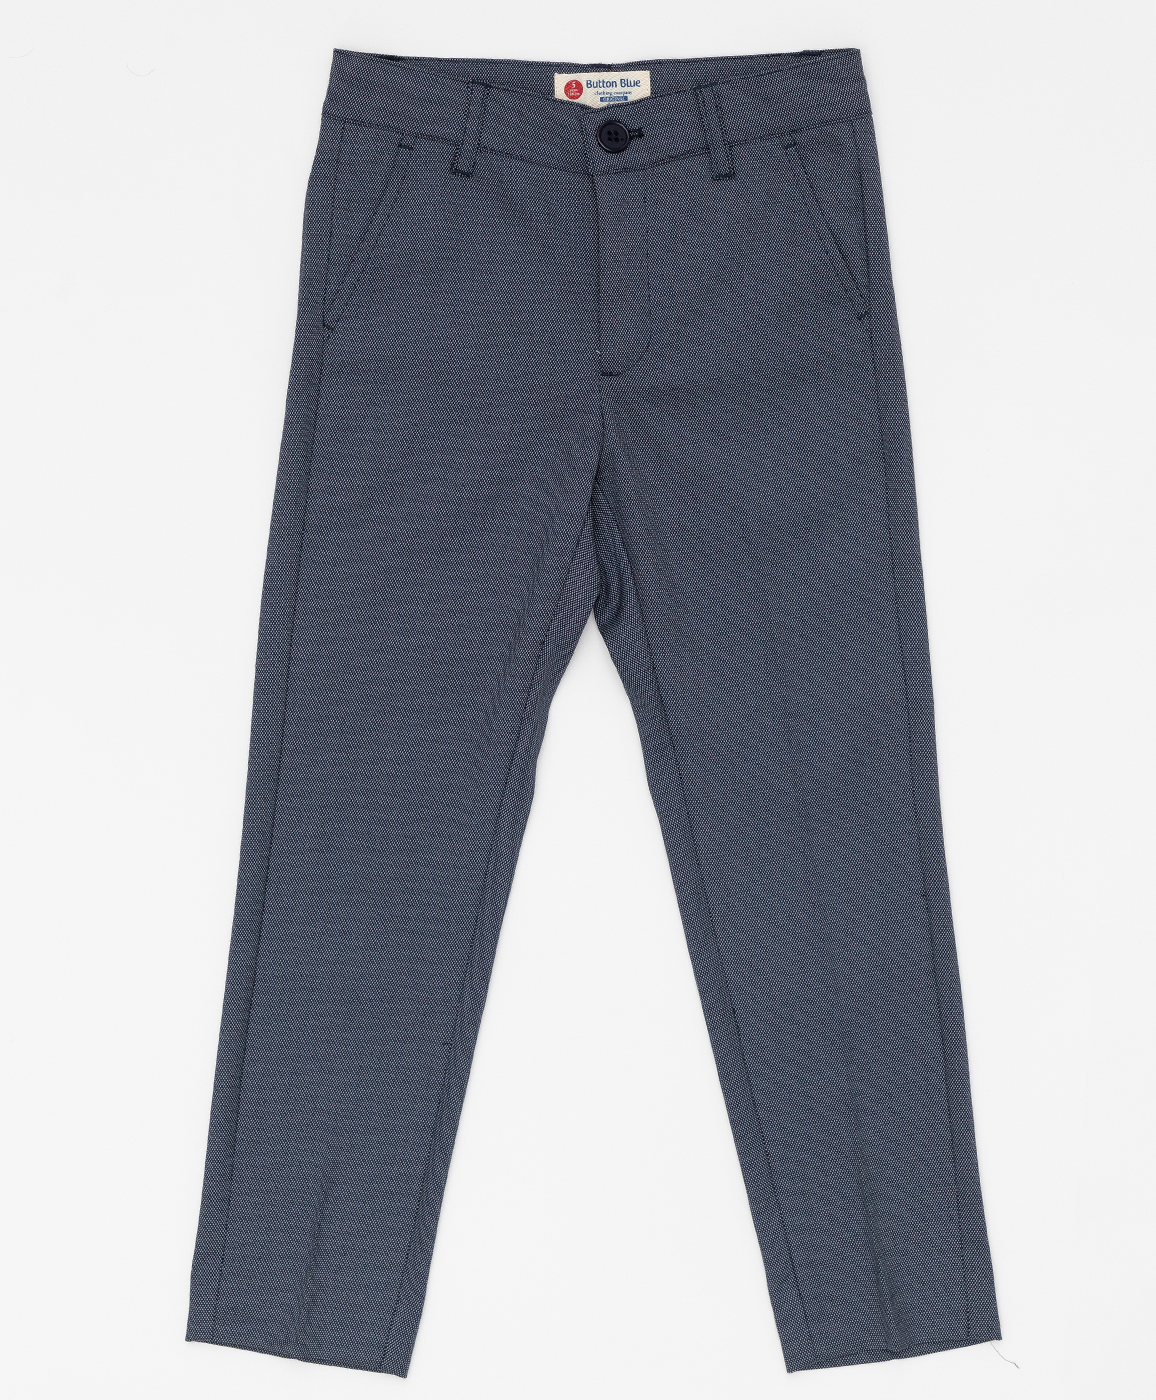 Серые брюки с узором "точка" Button Blue 220BBBMP63010800, размер 98, цвет серый regular fit / прямые - фото 1